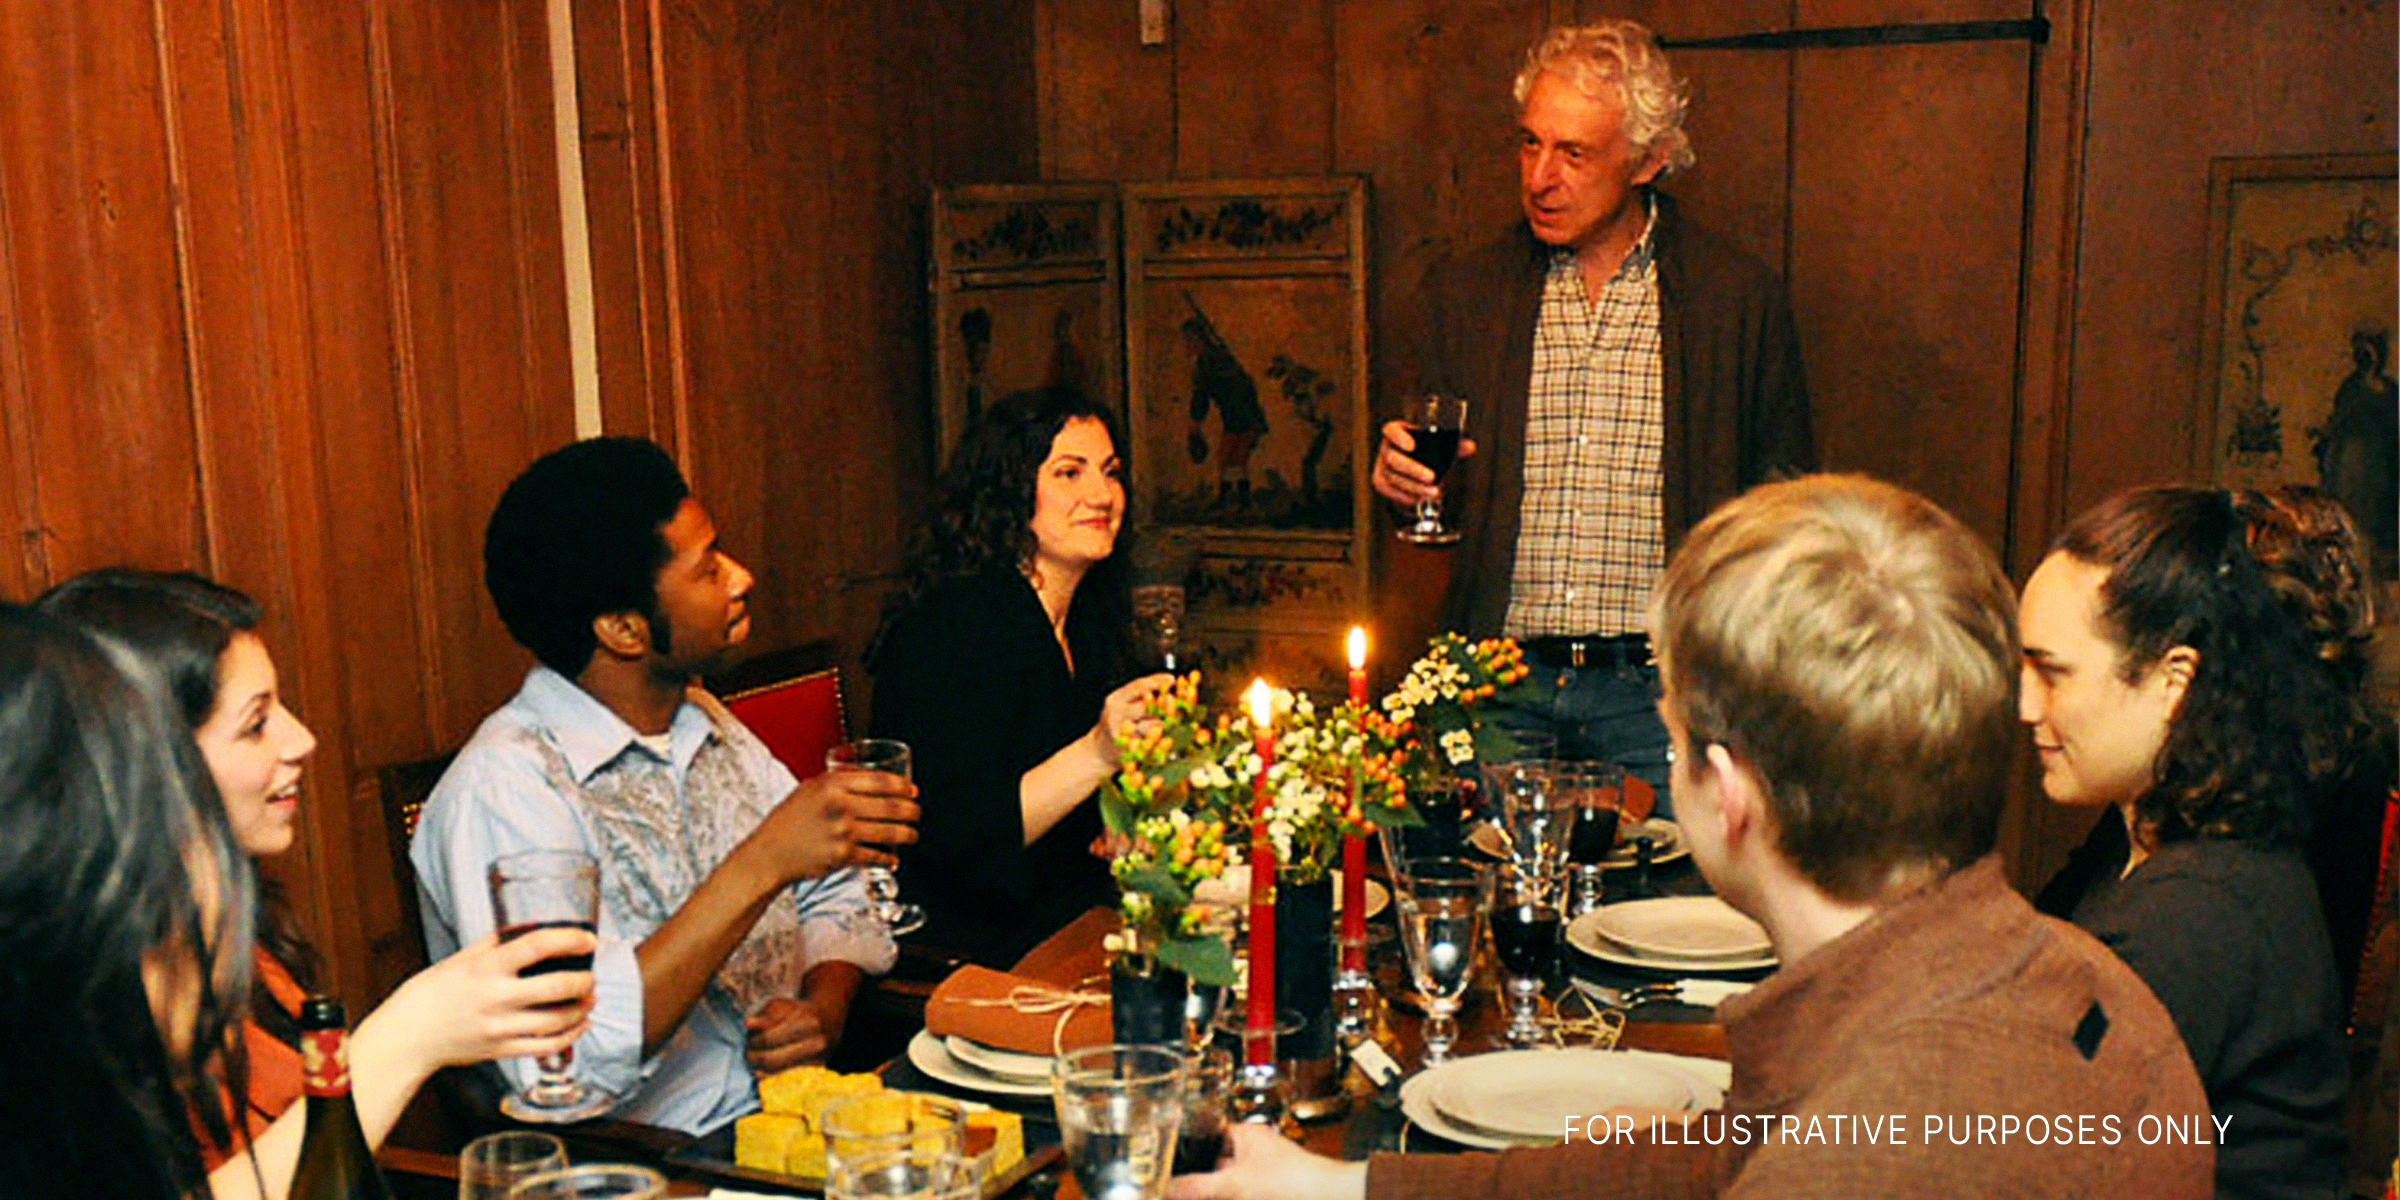 A family having dinner | Source: Shutterstock